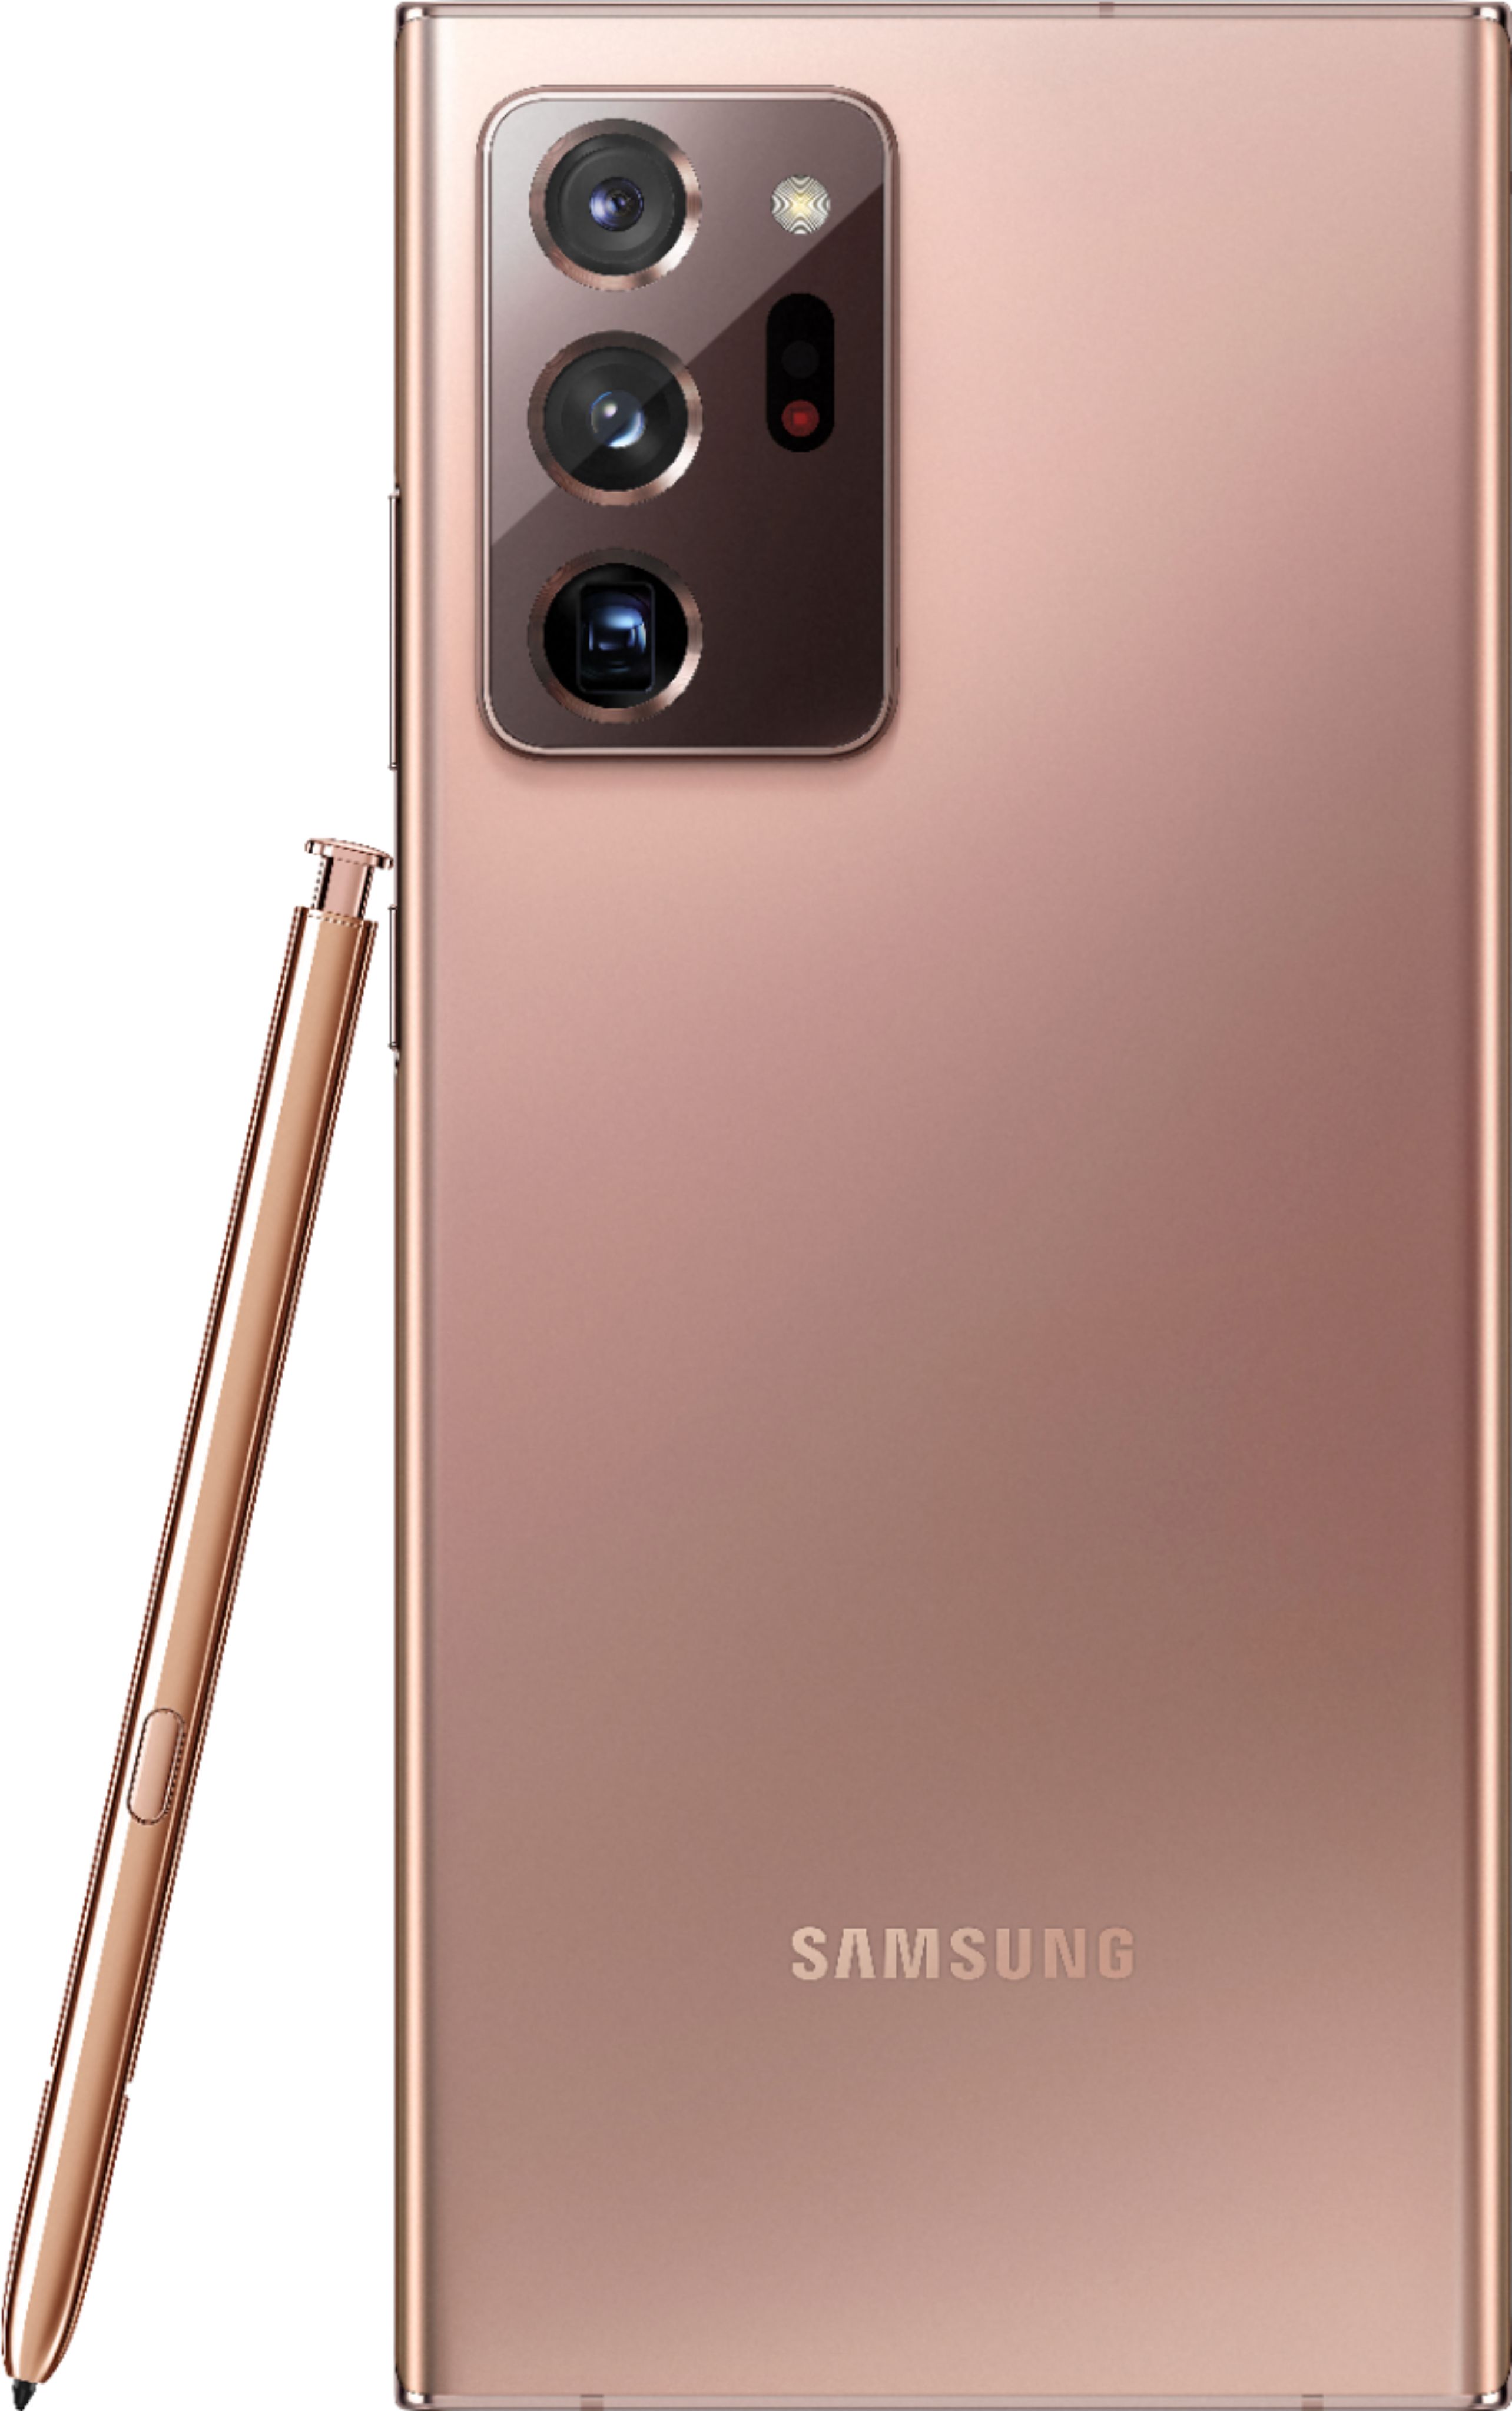 スマートフォン/携帯電話 スマートフォン本体 Best Buy: Samsung Galaxy Note20 Ultra 5G 128GB (Unlocked) Mystic 